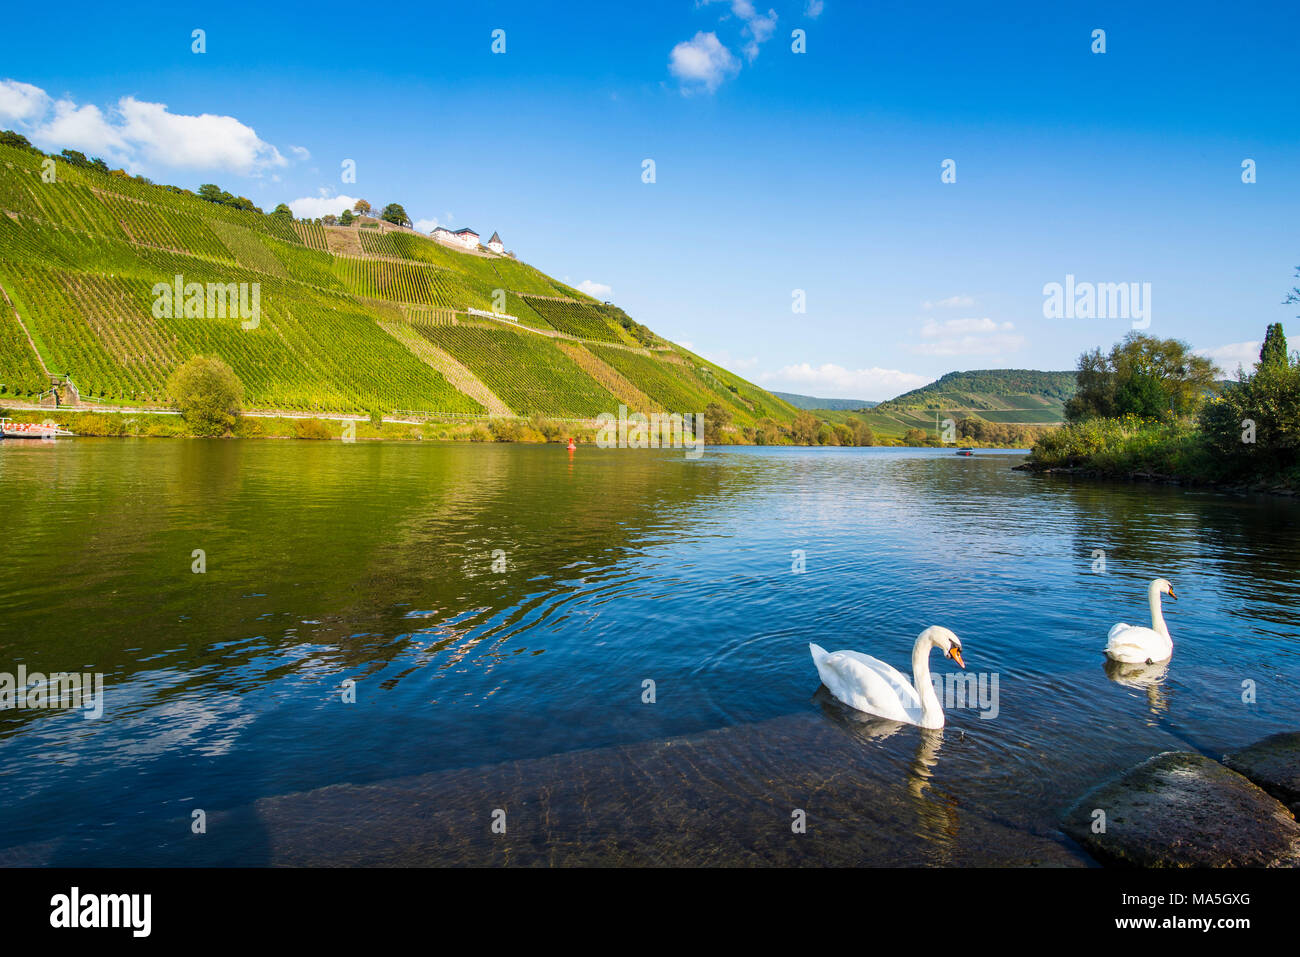 Cigni sul fiume Moselle prima i vigneti di Puenderich, valle della Mosella, Renania-Palatinato, Germania Foto Stock